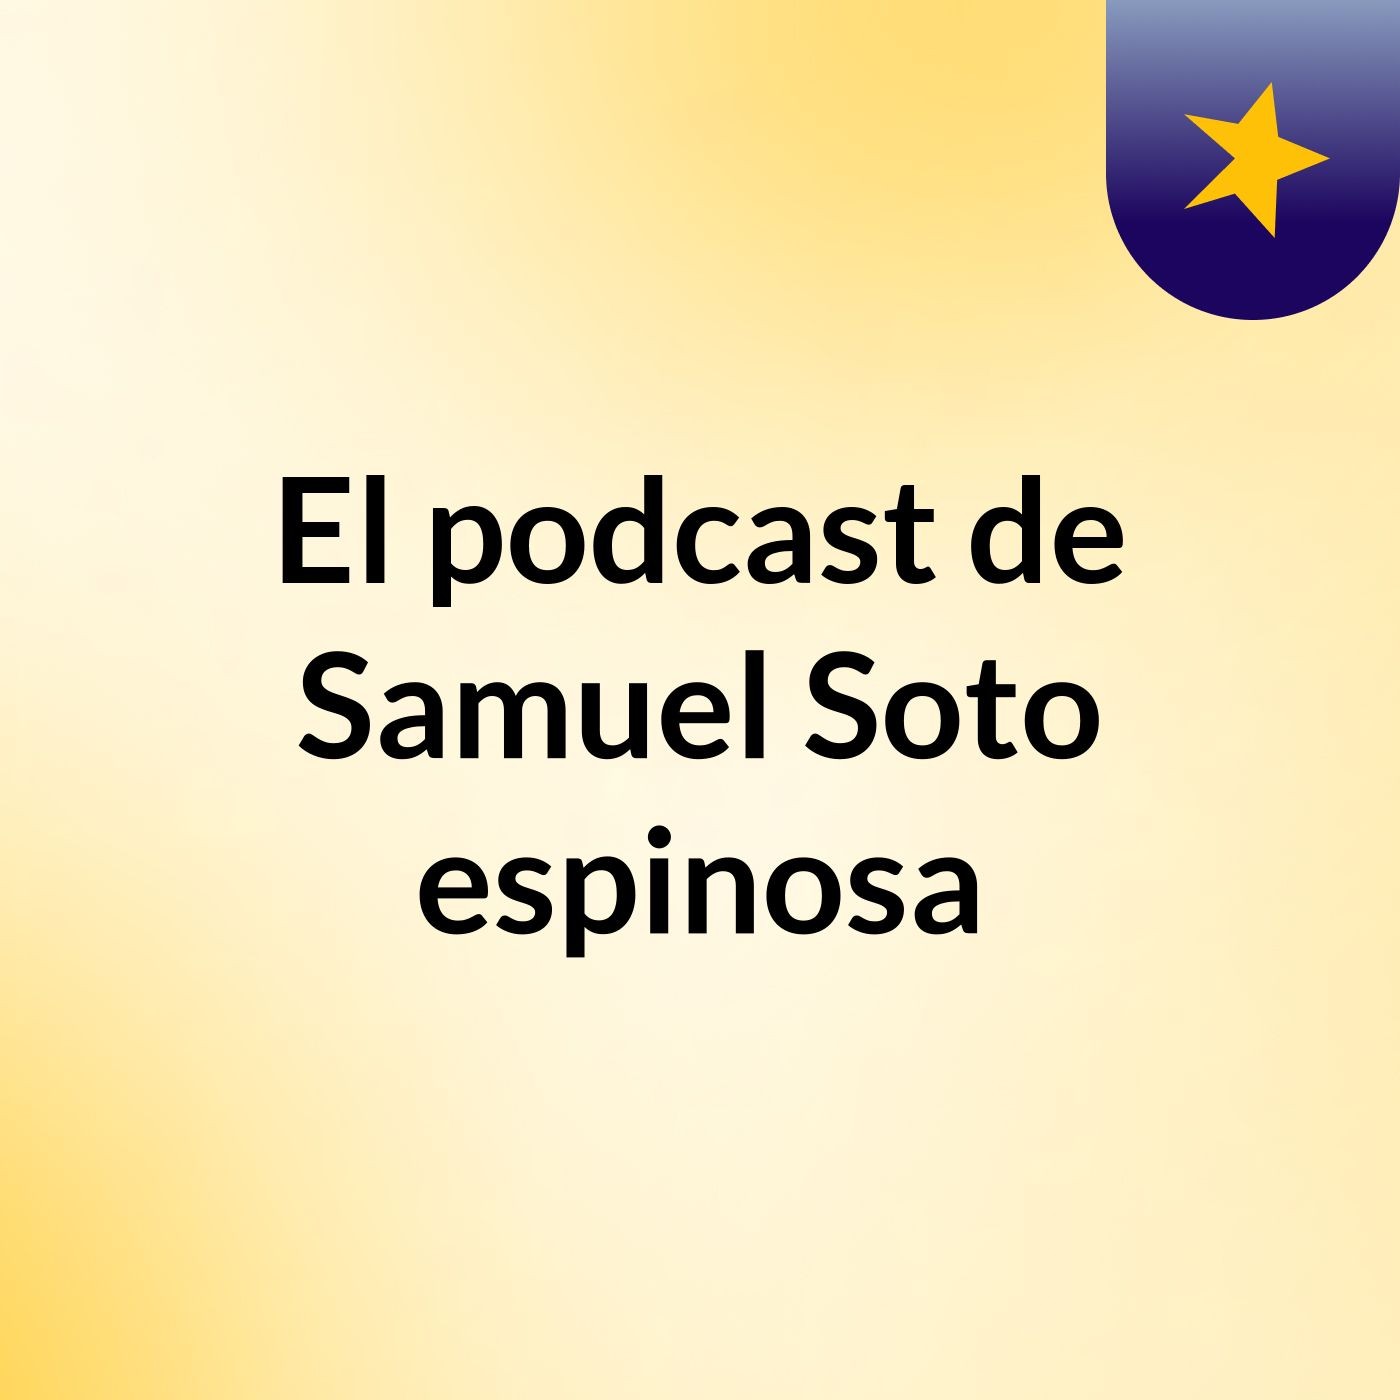 El podcast de Samuel Soto espinosa